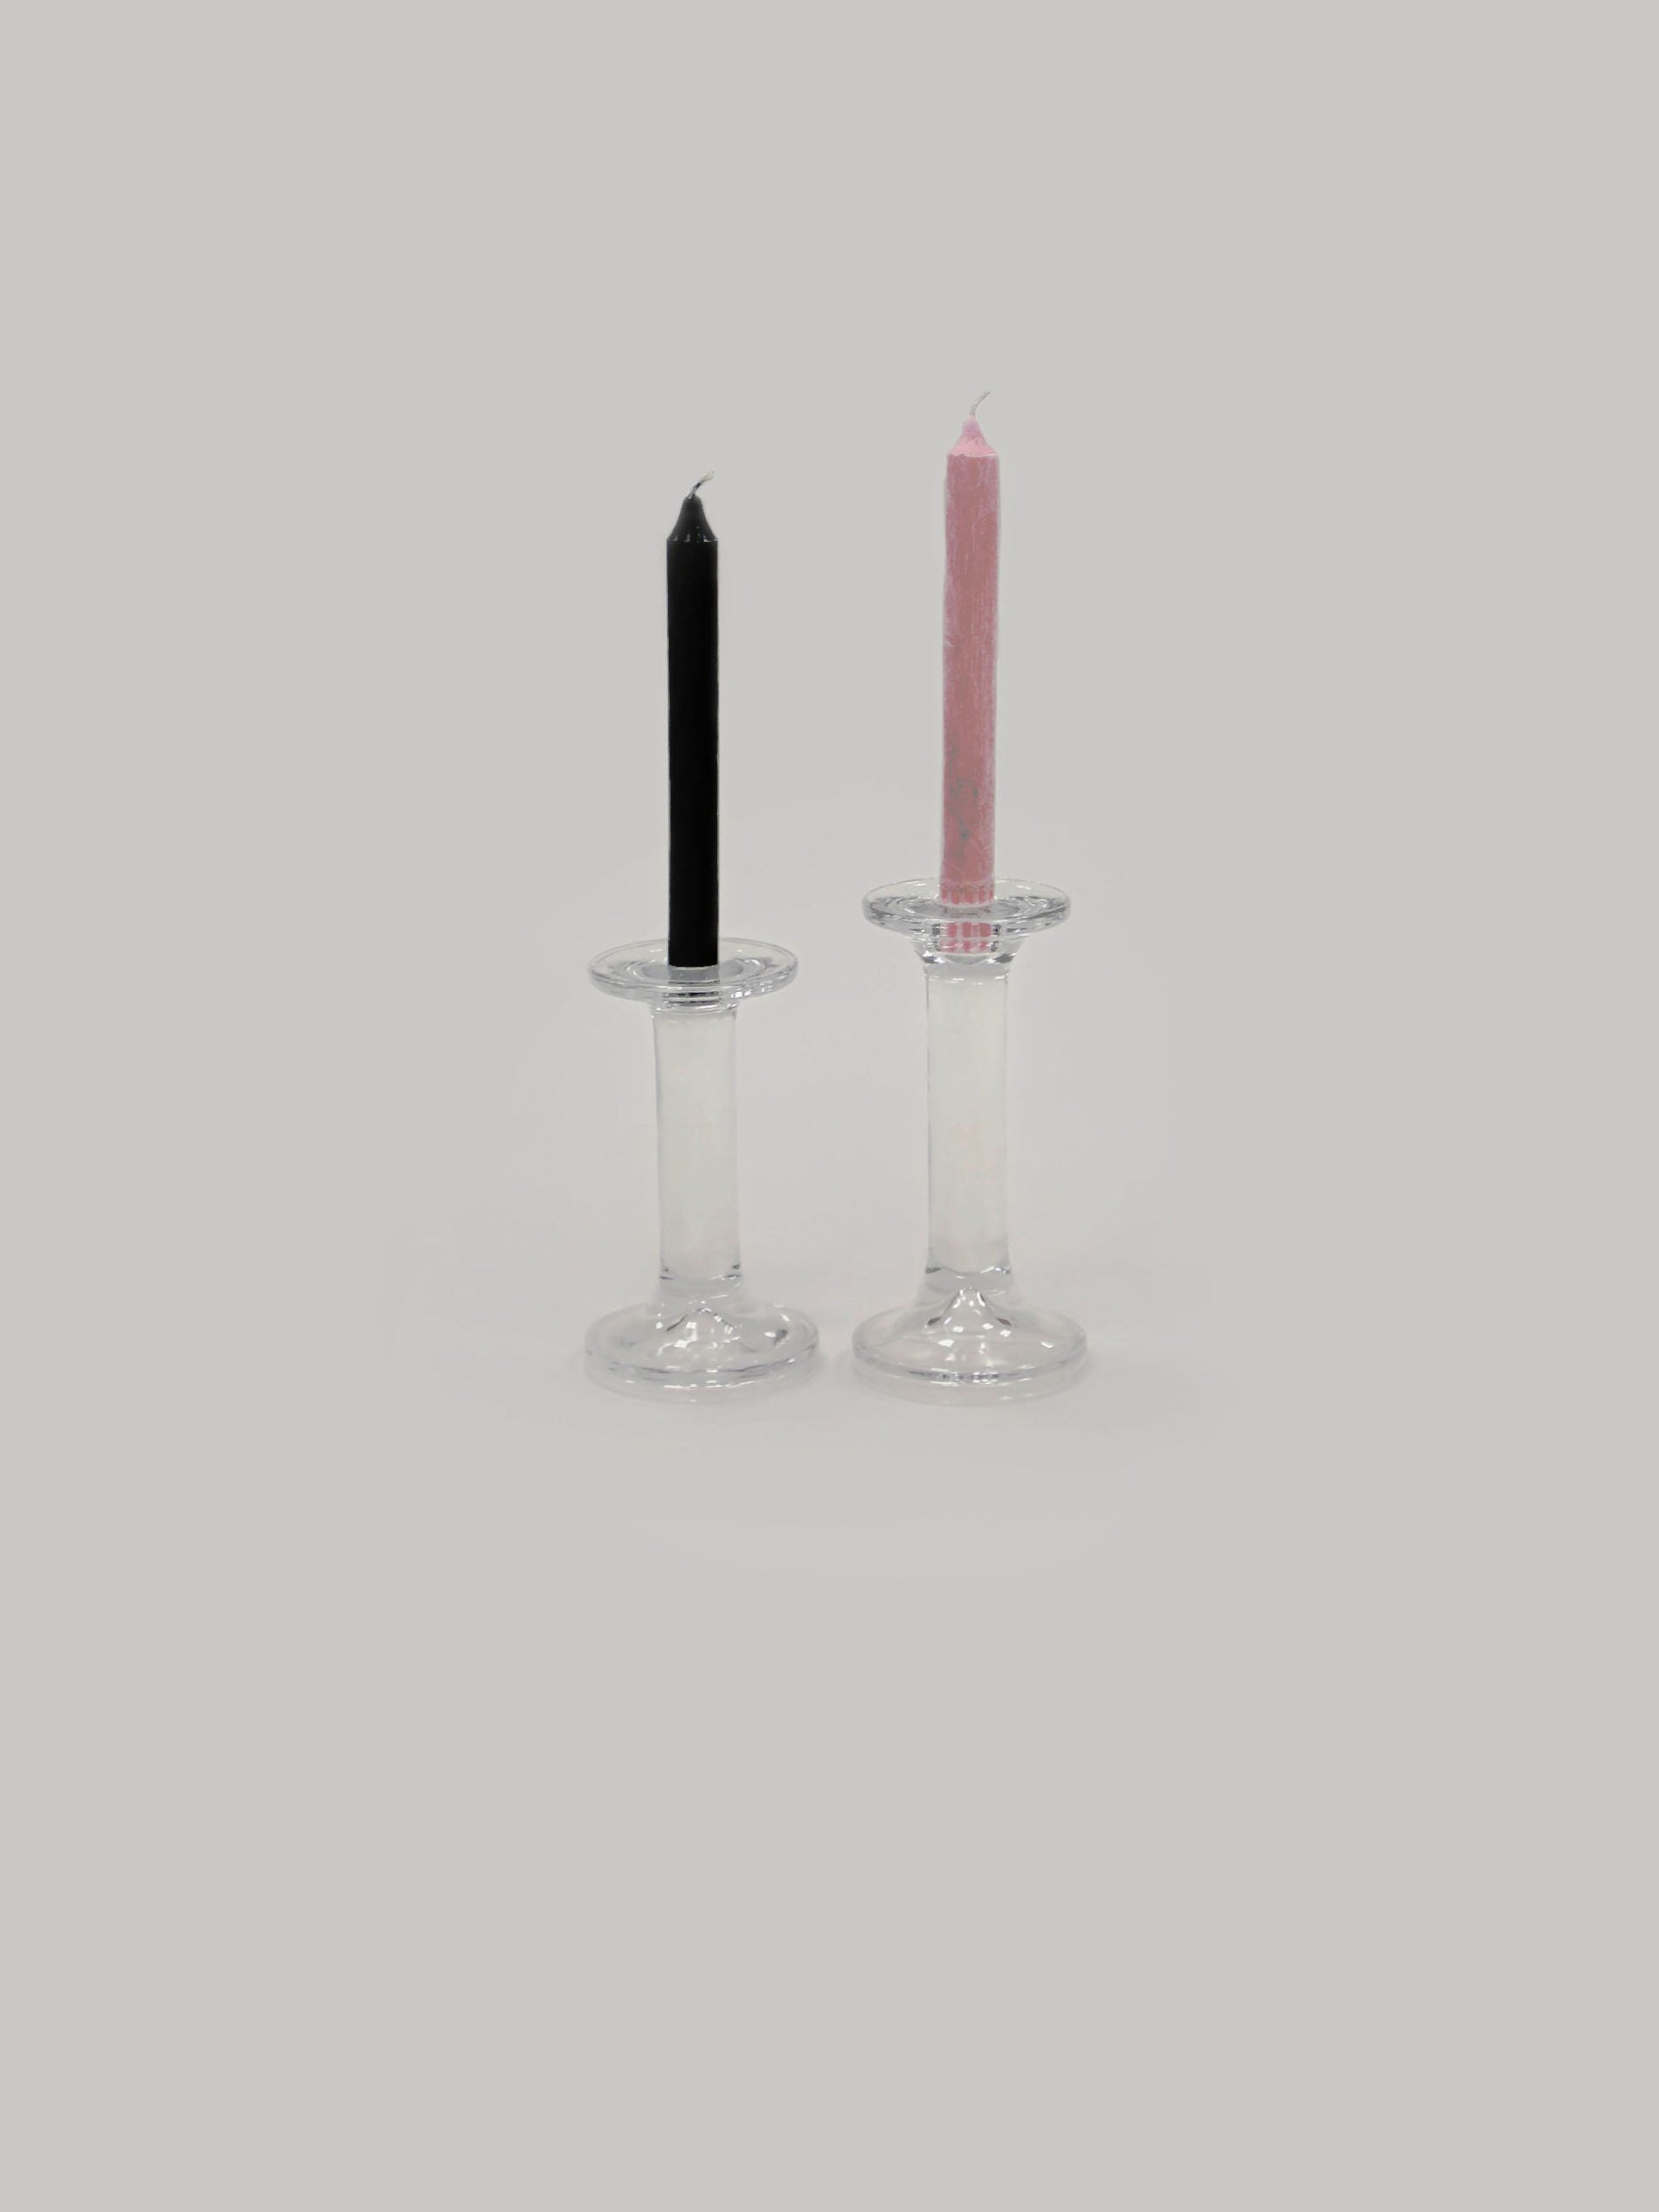 שתי פמוטים מזכוית אחד גדול ואחד קטן עם נרות על רקע אפור בהיר